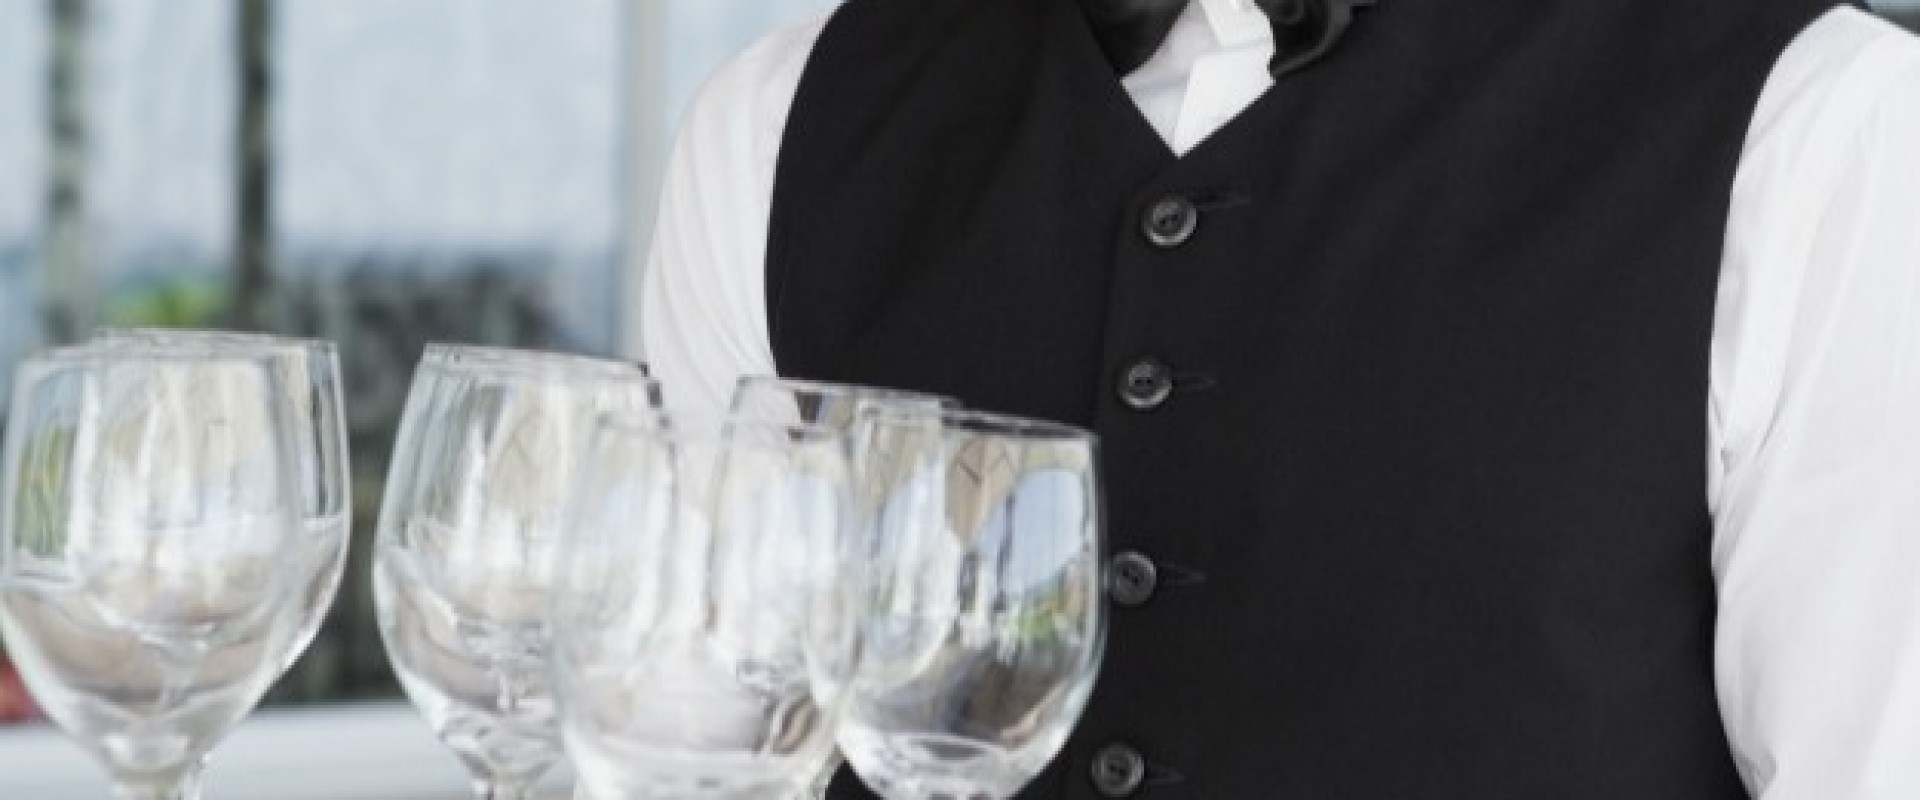 Как официанты обманывают клиентов и руководство?